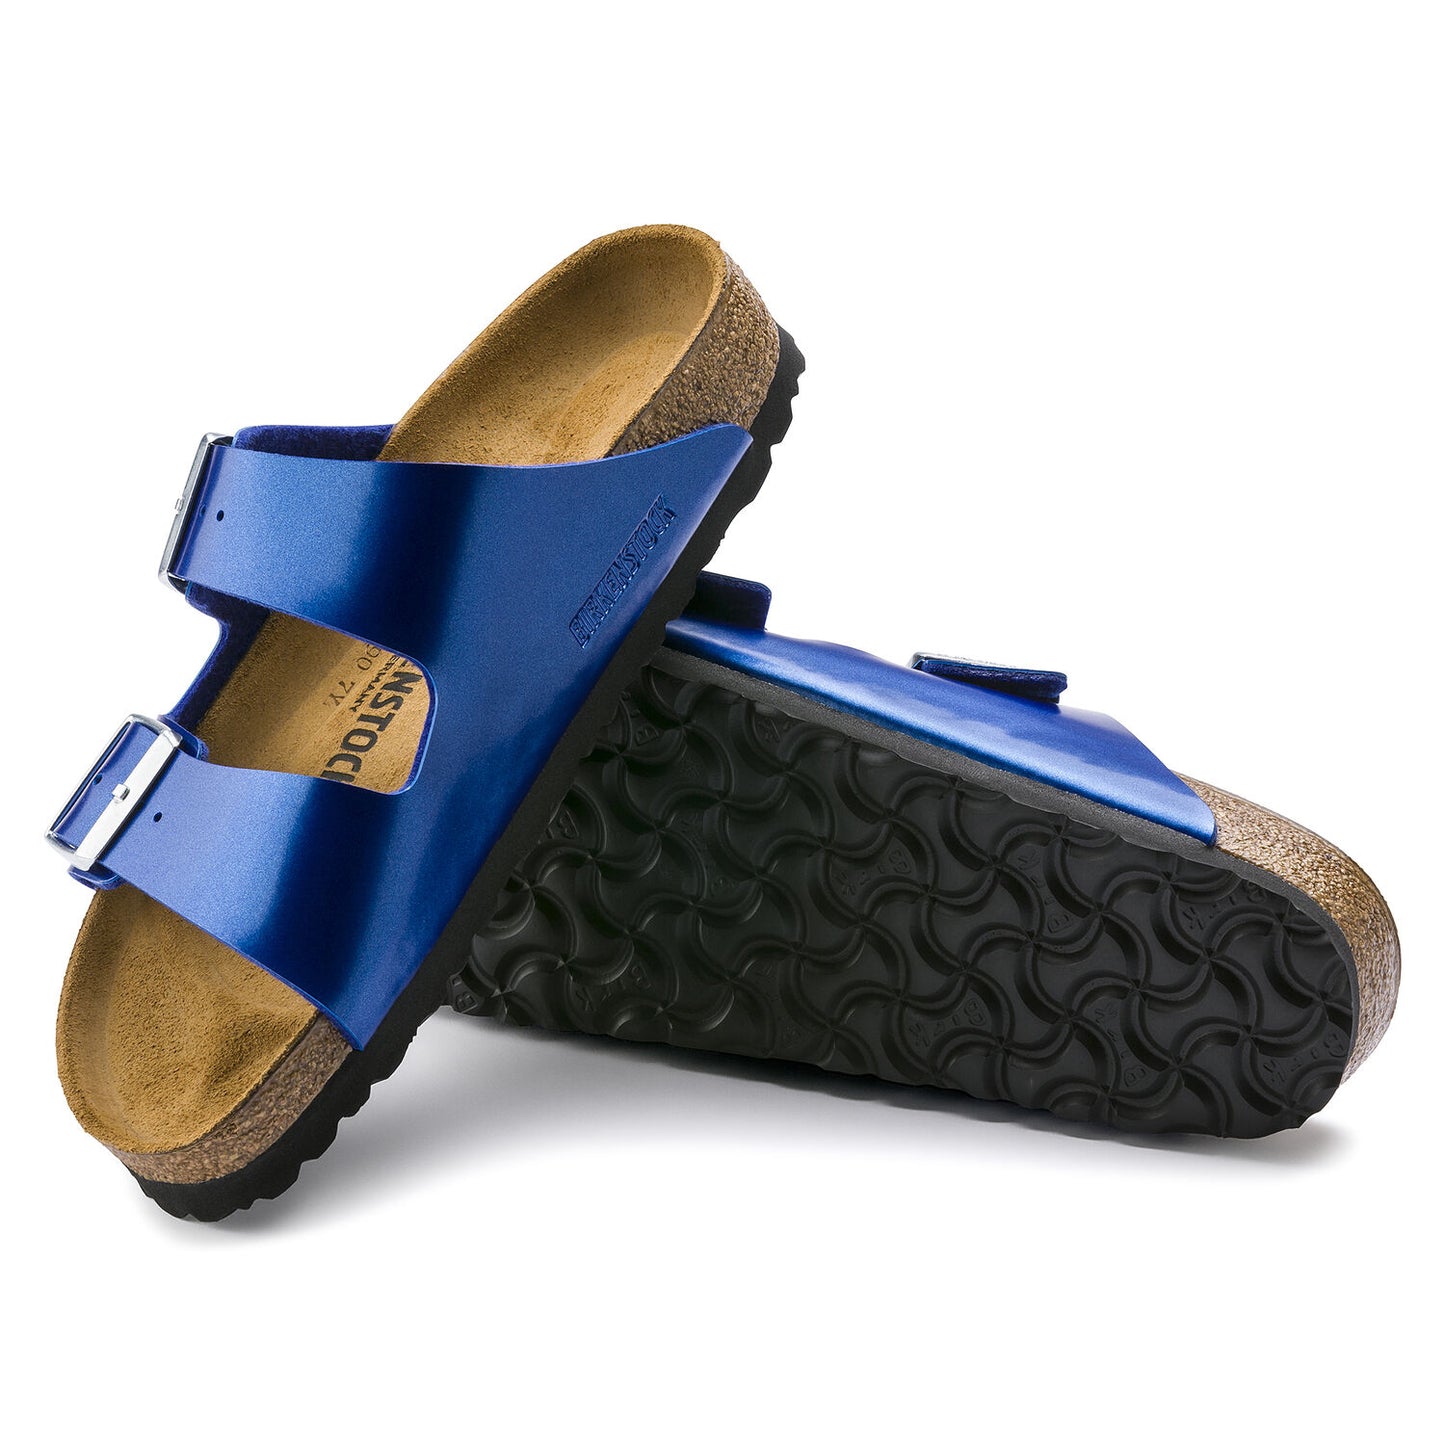 Birkenstock Unisex Arizona Birko-Flor Narrow Fit Sandals Electric Metallic Ocean